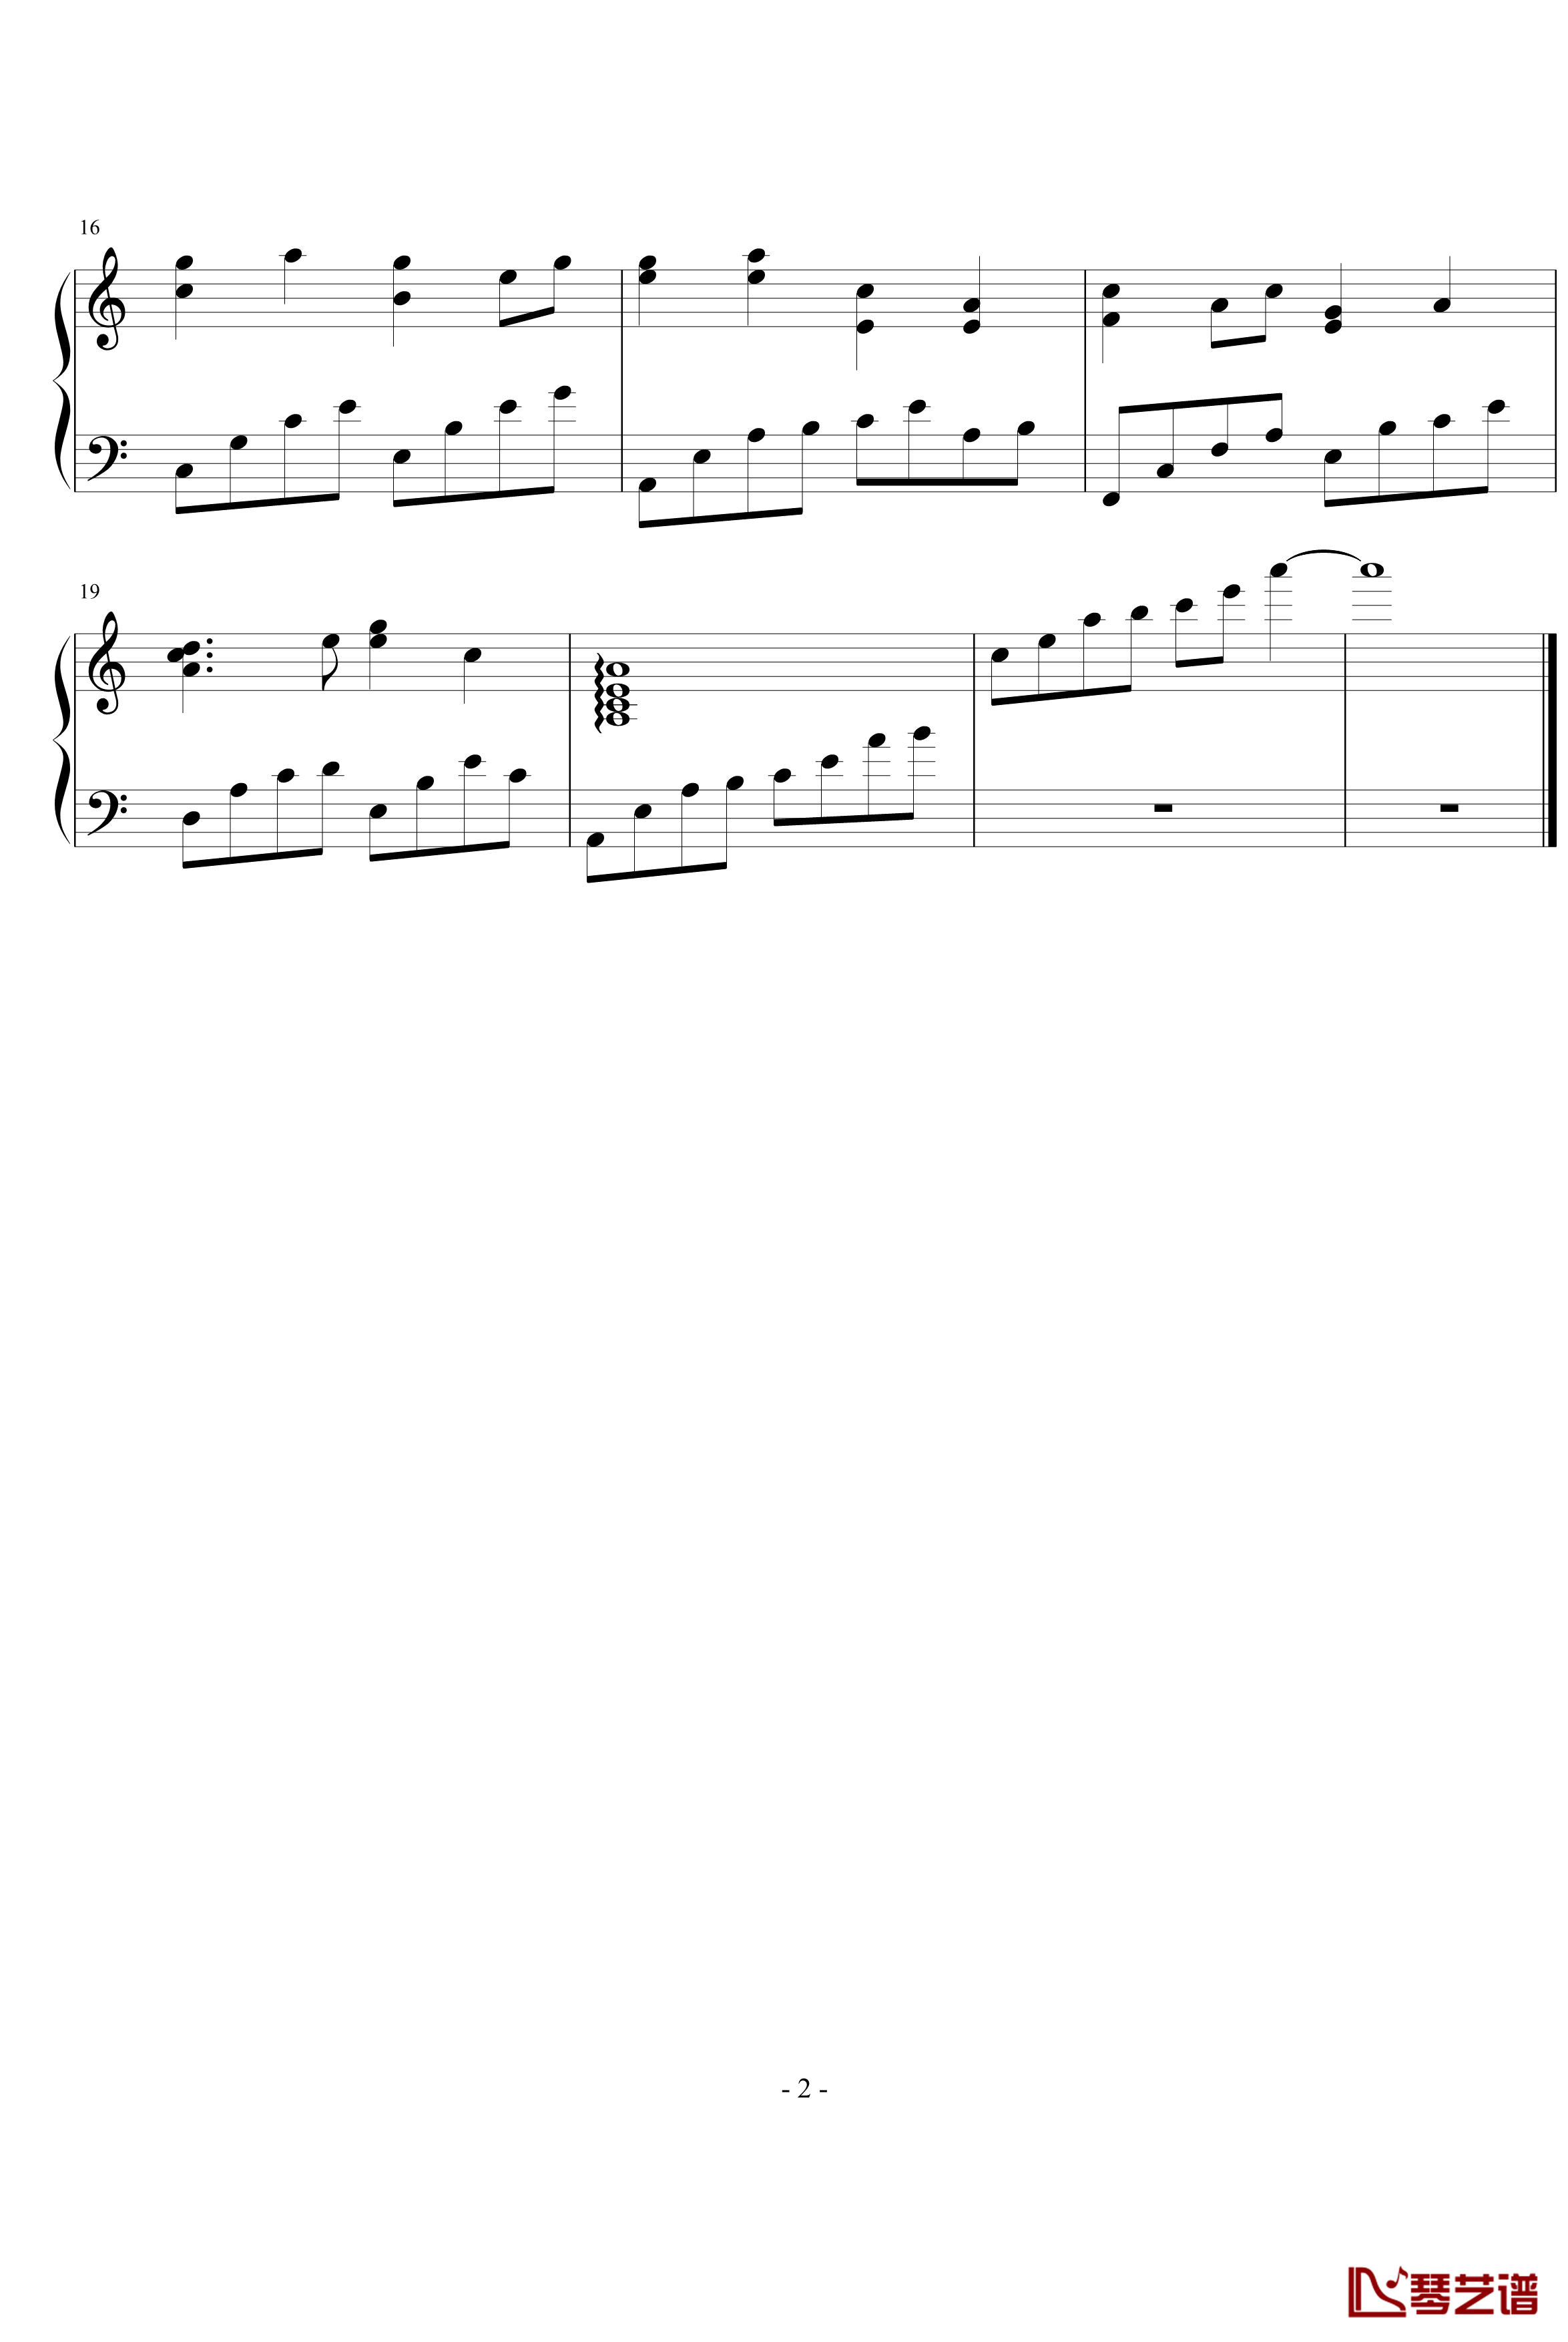 嘎达梅林钢琴谱-文武贝钢琴版-中国名曲2